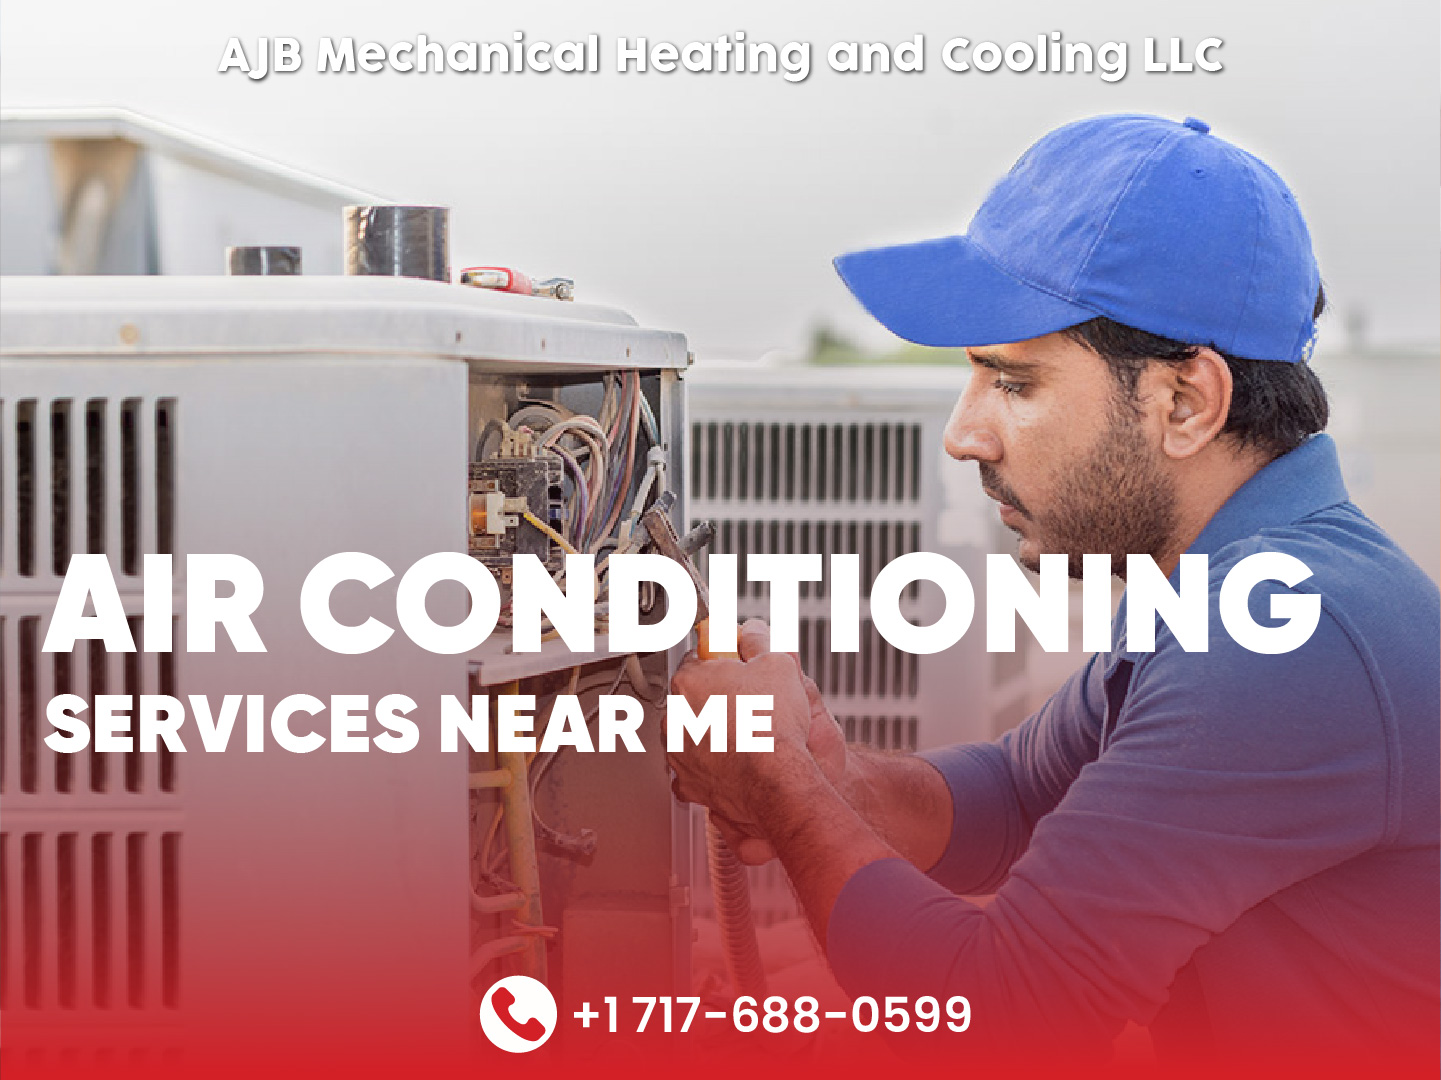 AJB Mechanical Heating & Cooling, LLC